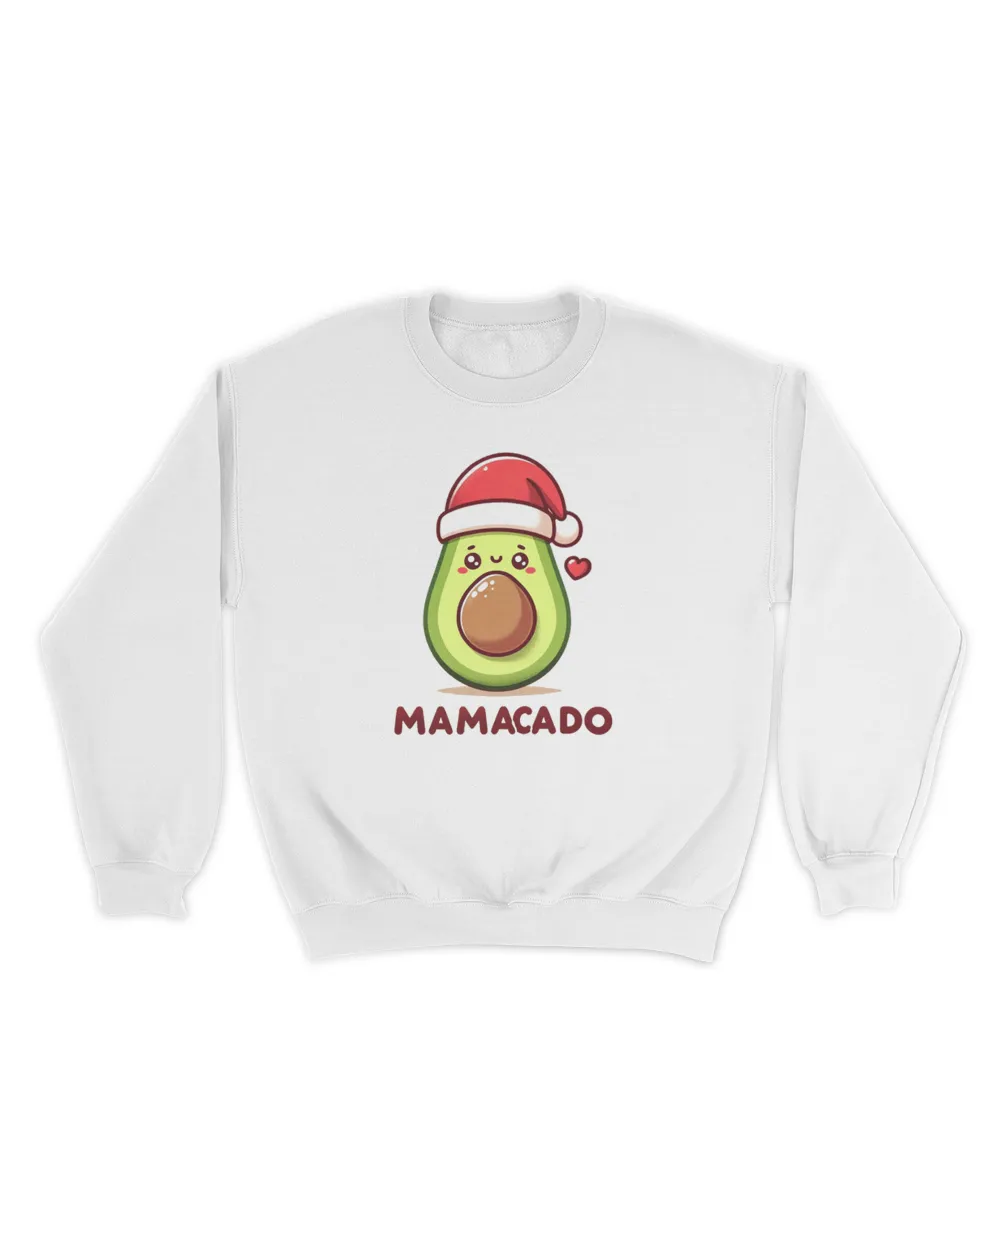 Mamacado (Avocado Lover Mom) - Christmas Pregnancy Announcement